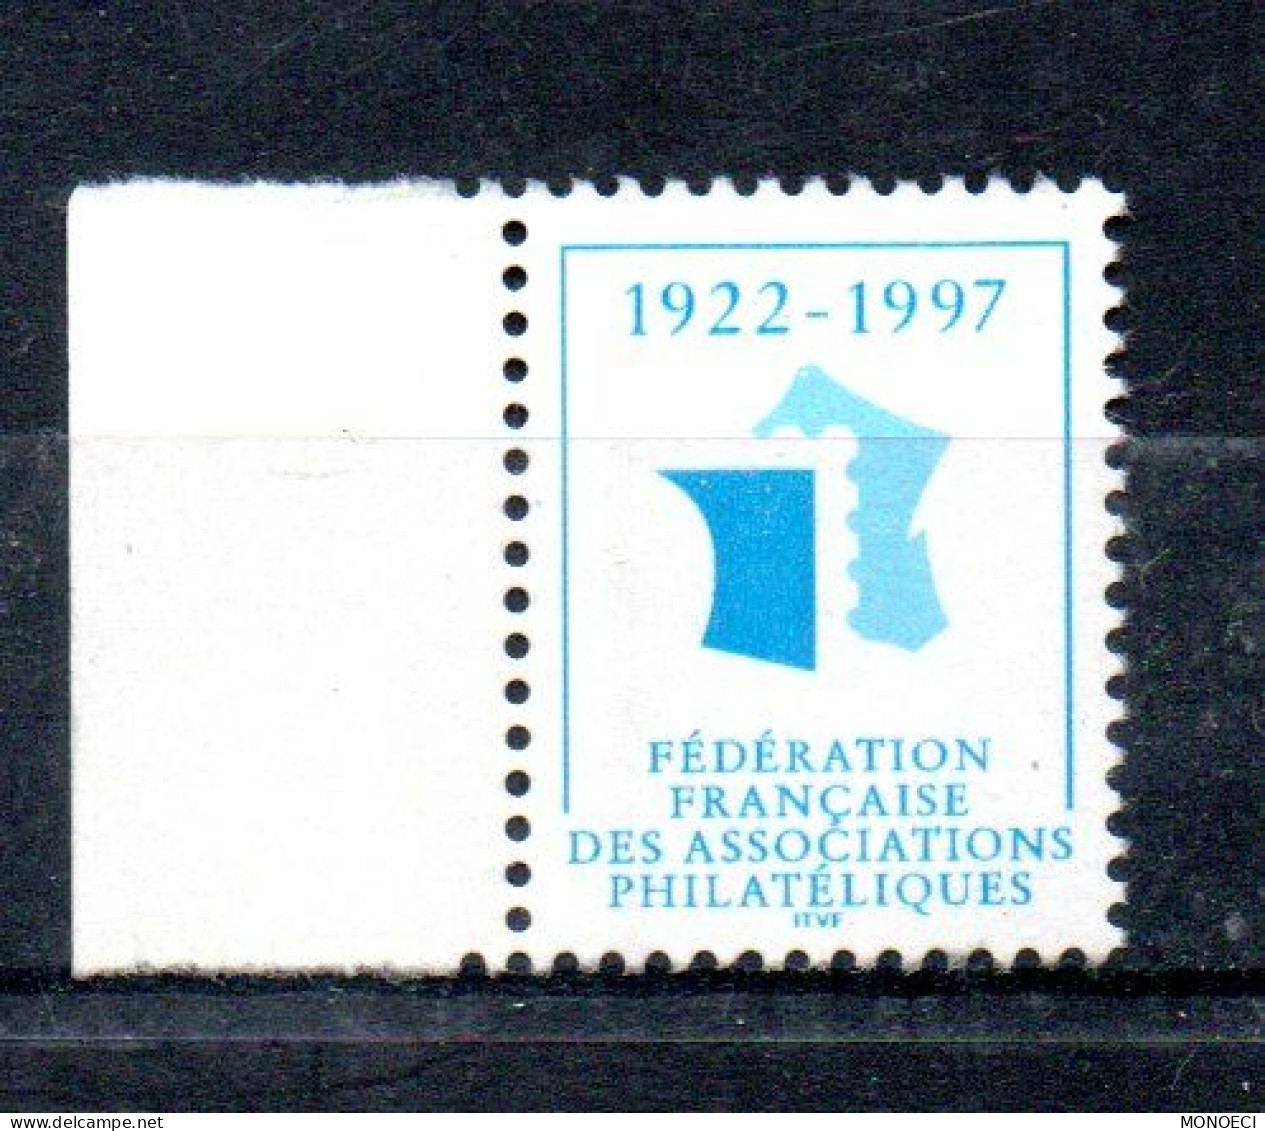 FRANCE -- ERRINOPHILIE -- Vignette, Cinderella -- Fédération Française Des Associations Philatéliques 1922 - 1997 - Exposiciones Filatelicas